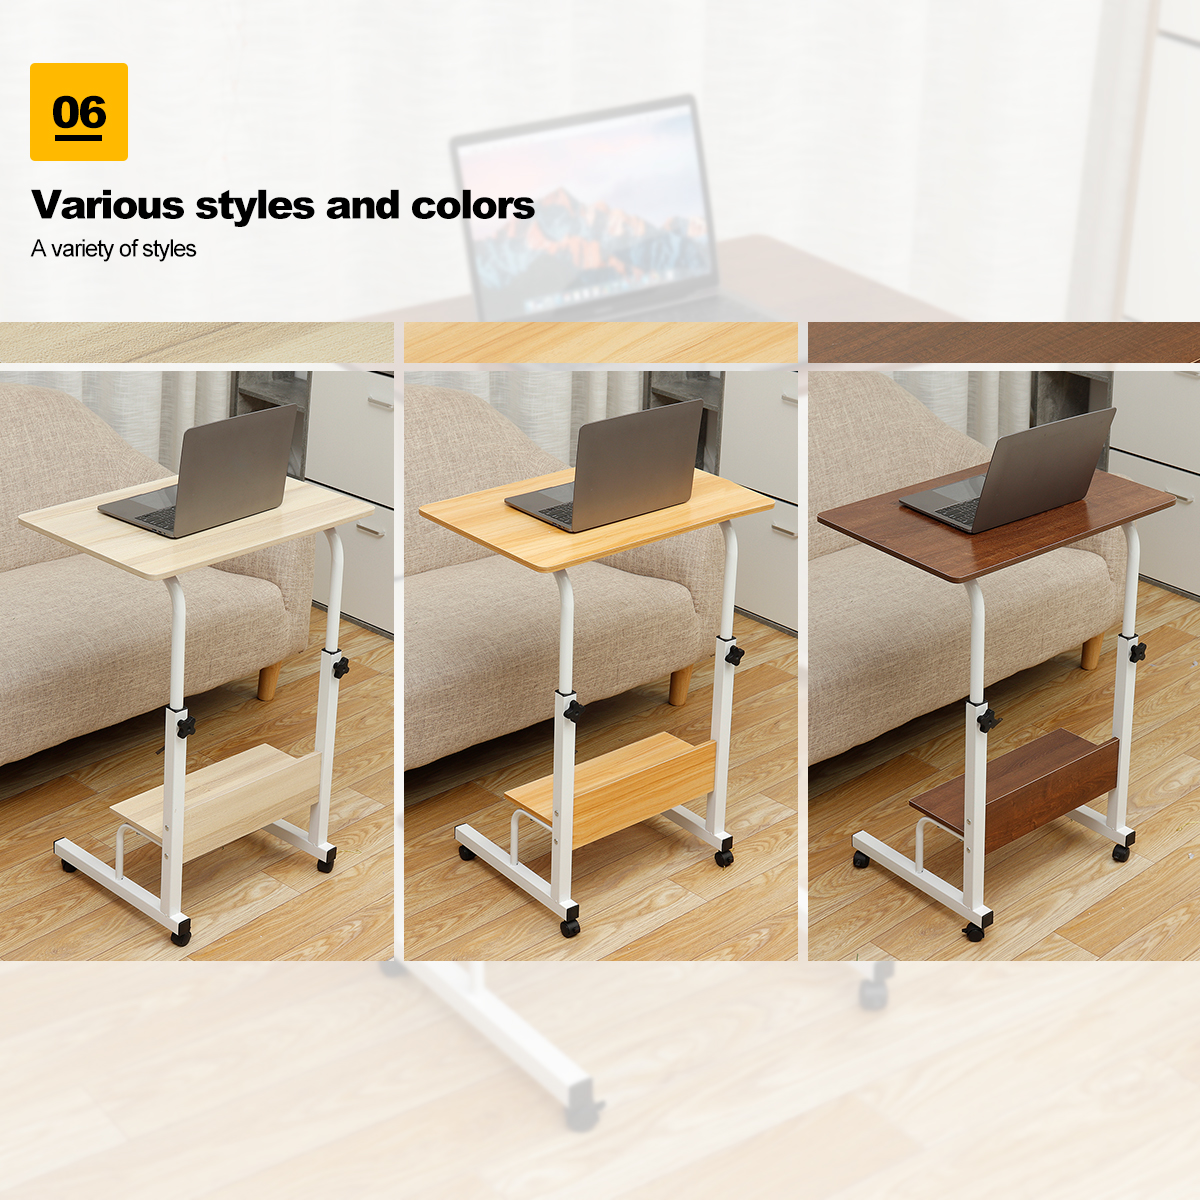 Adjustable-Laptop-Desk-Movable-Bed-Desk-Writing-Small-Desk-Lifting-Desk-Mobile-Bedside-Table-for-Hom-1777082-5